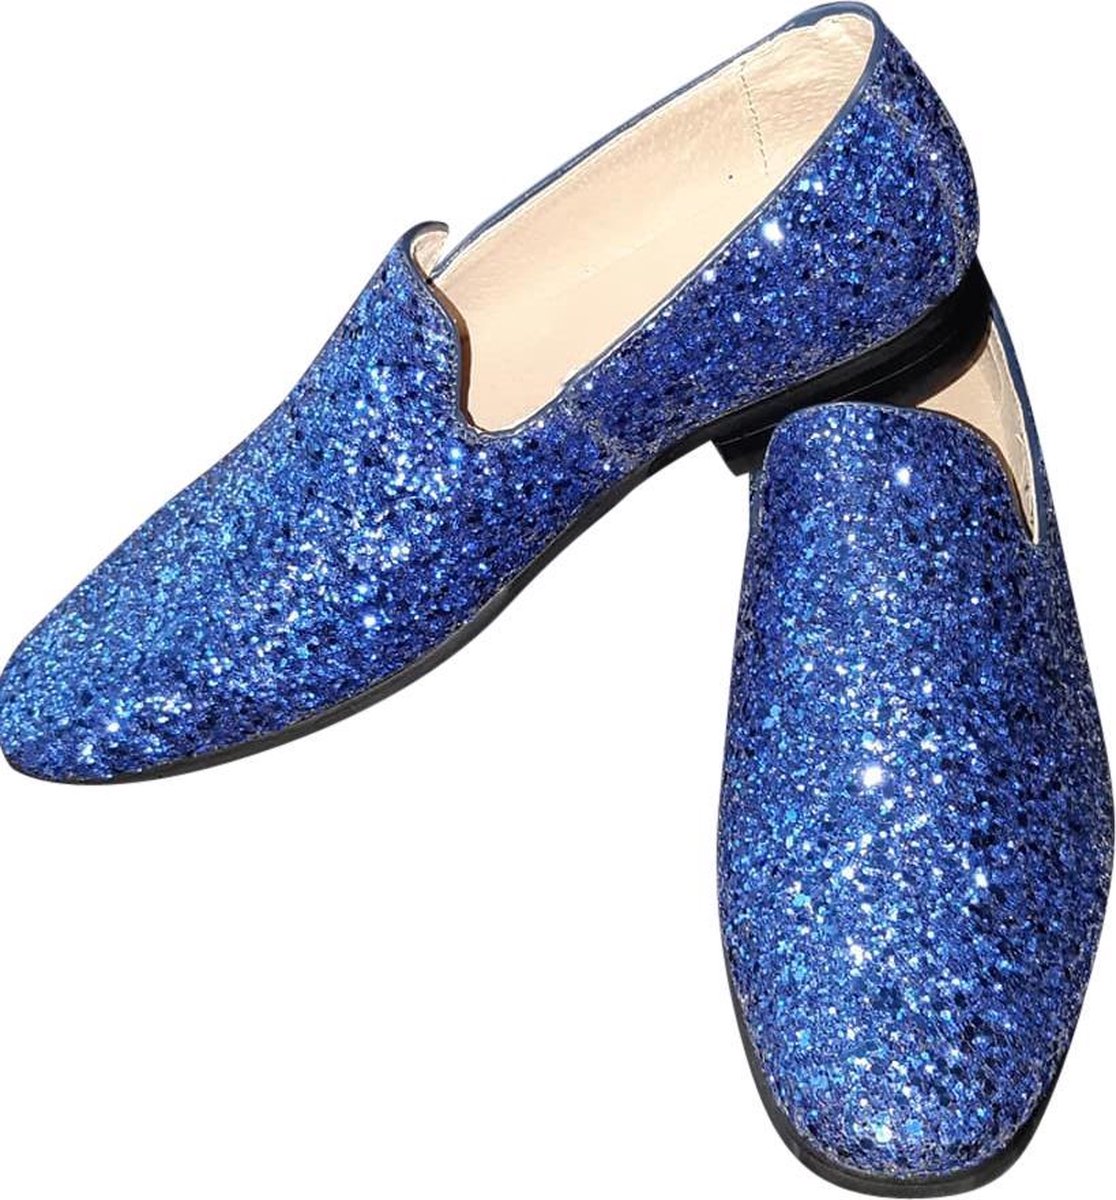 Heren - Glitter schoen - Kobalt blauw - Maat 41 - Disco